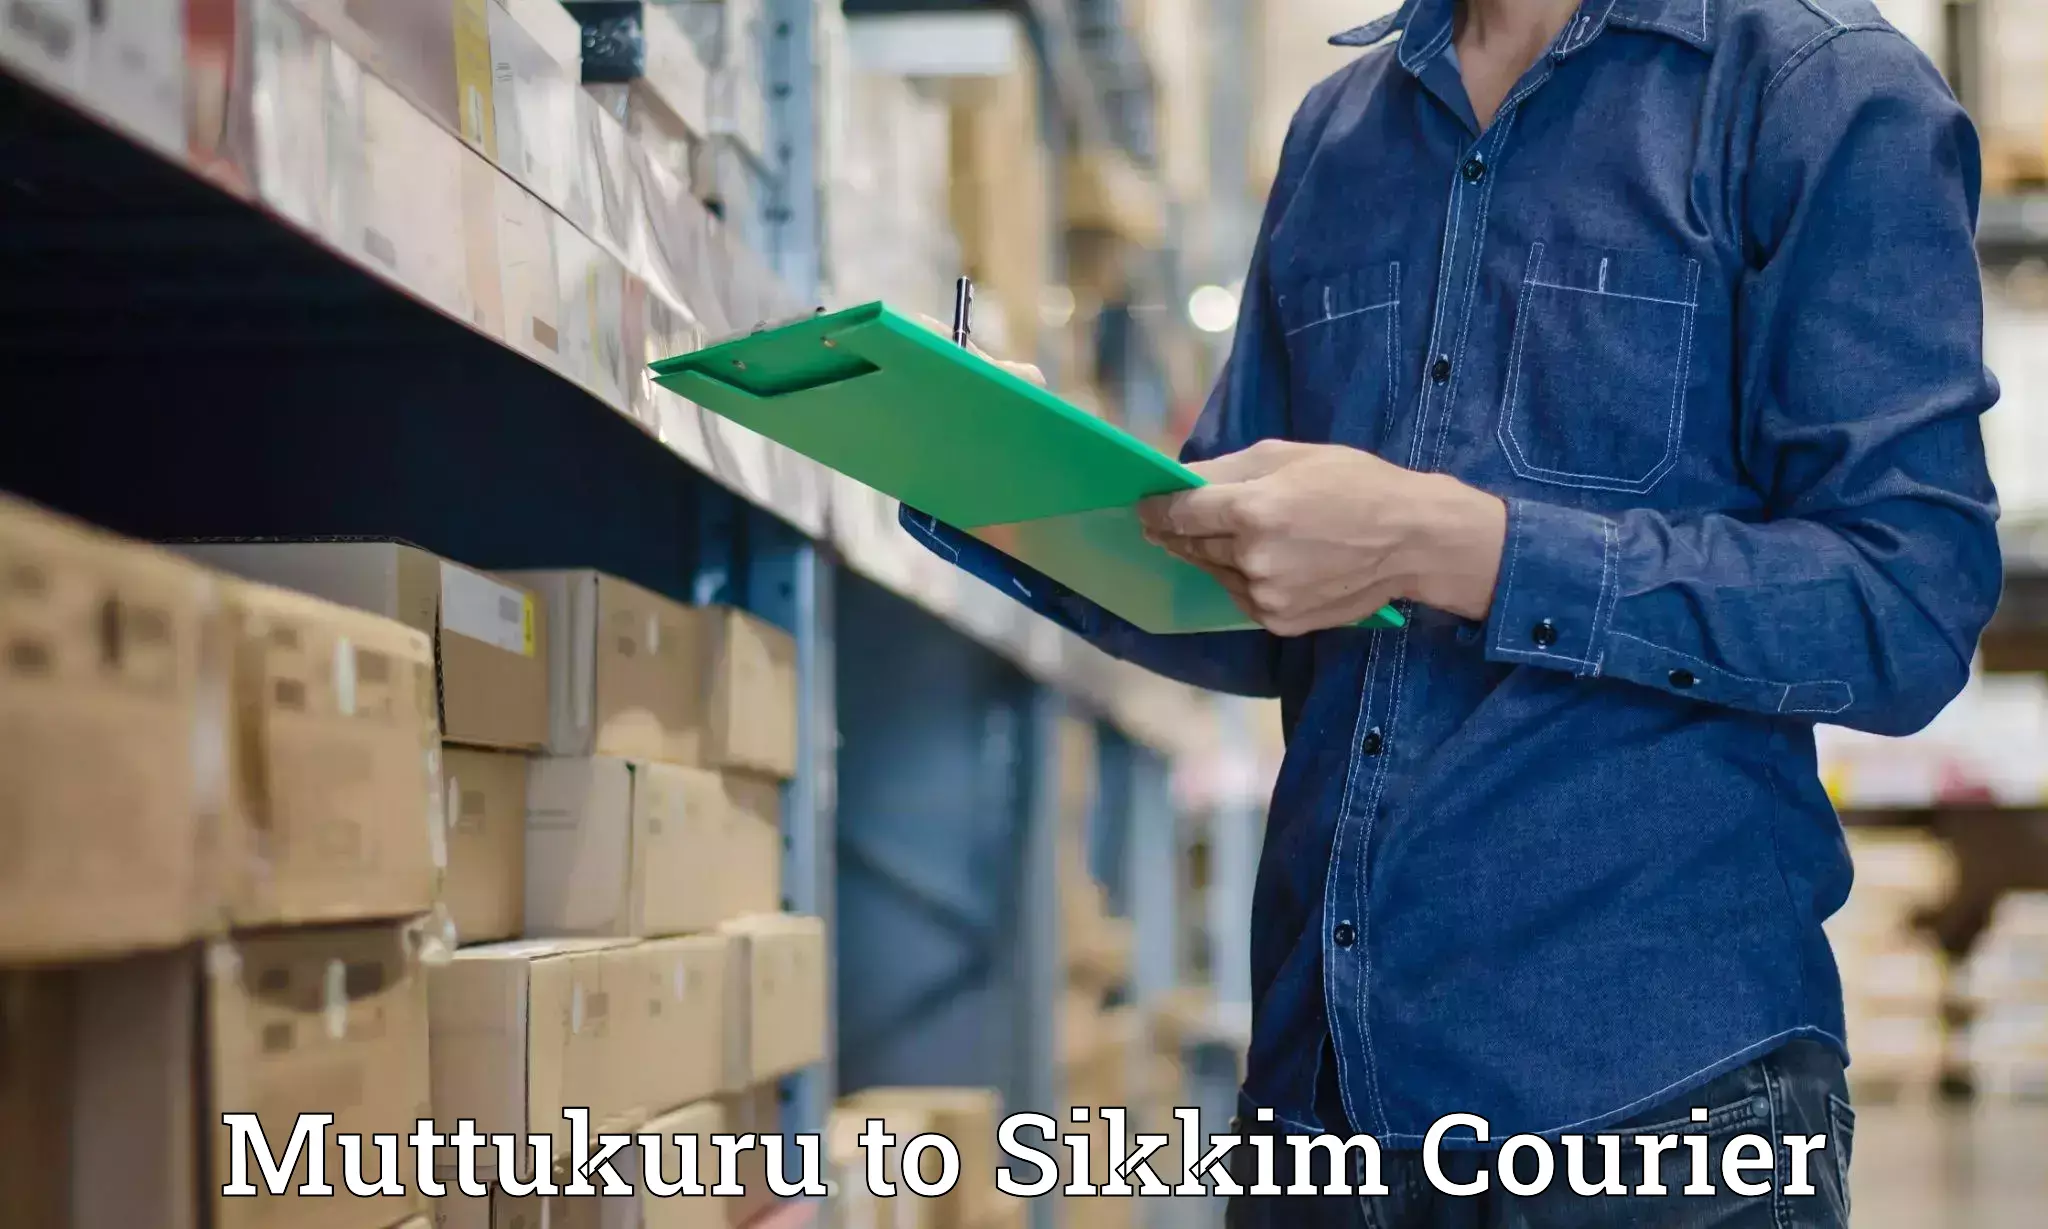 Premium courier solutions Muttukuru to Pelling